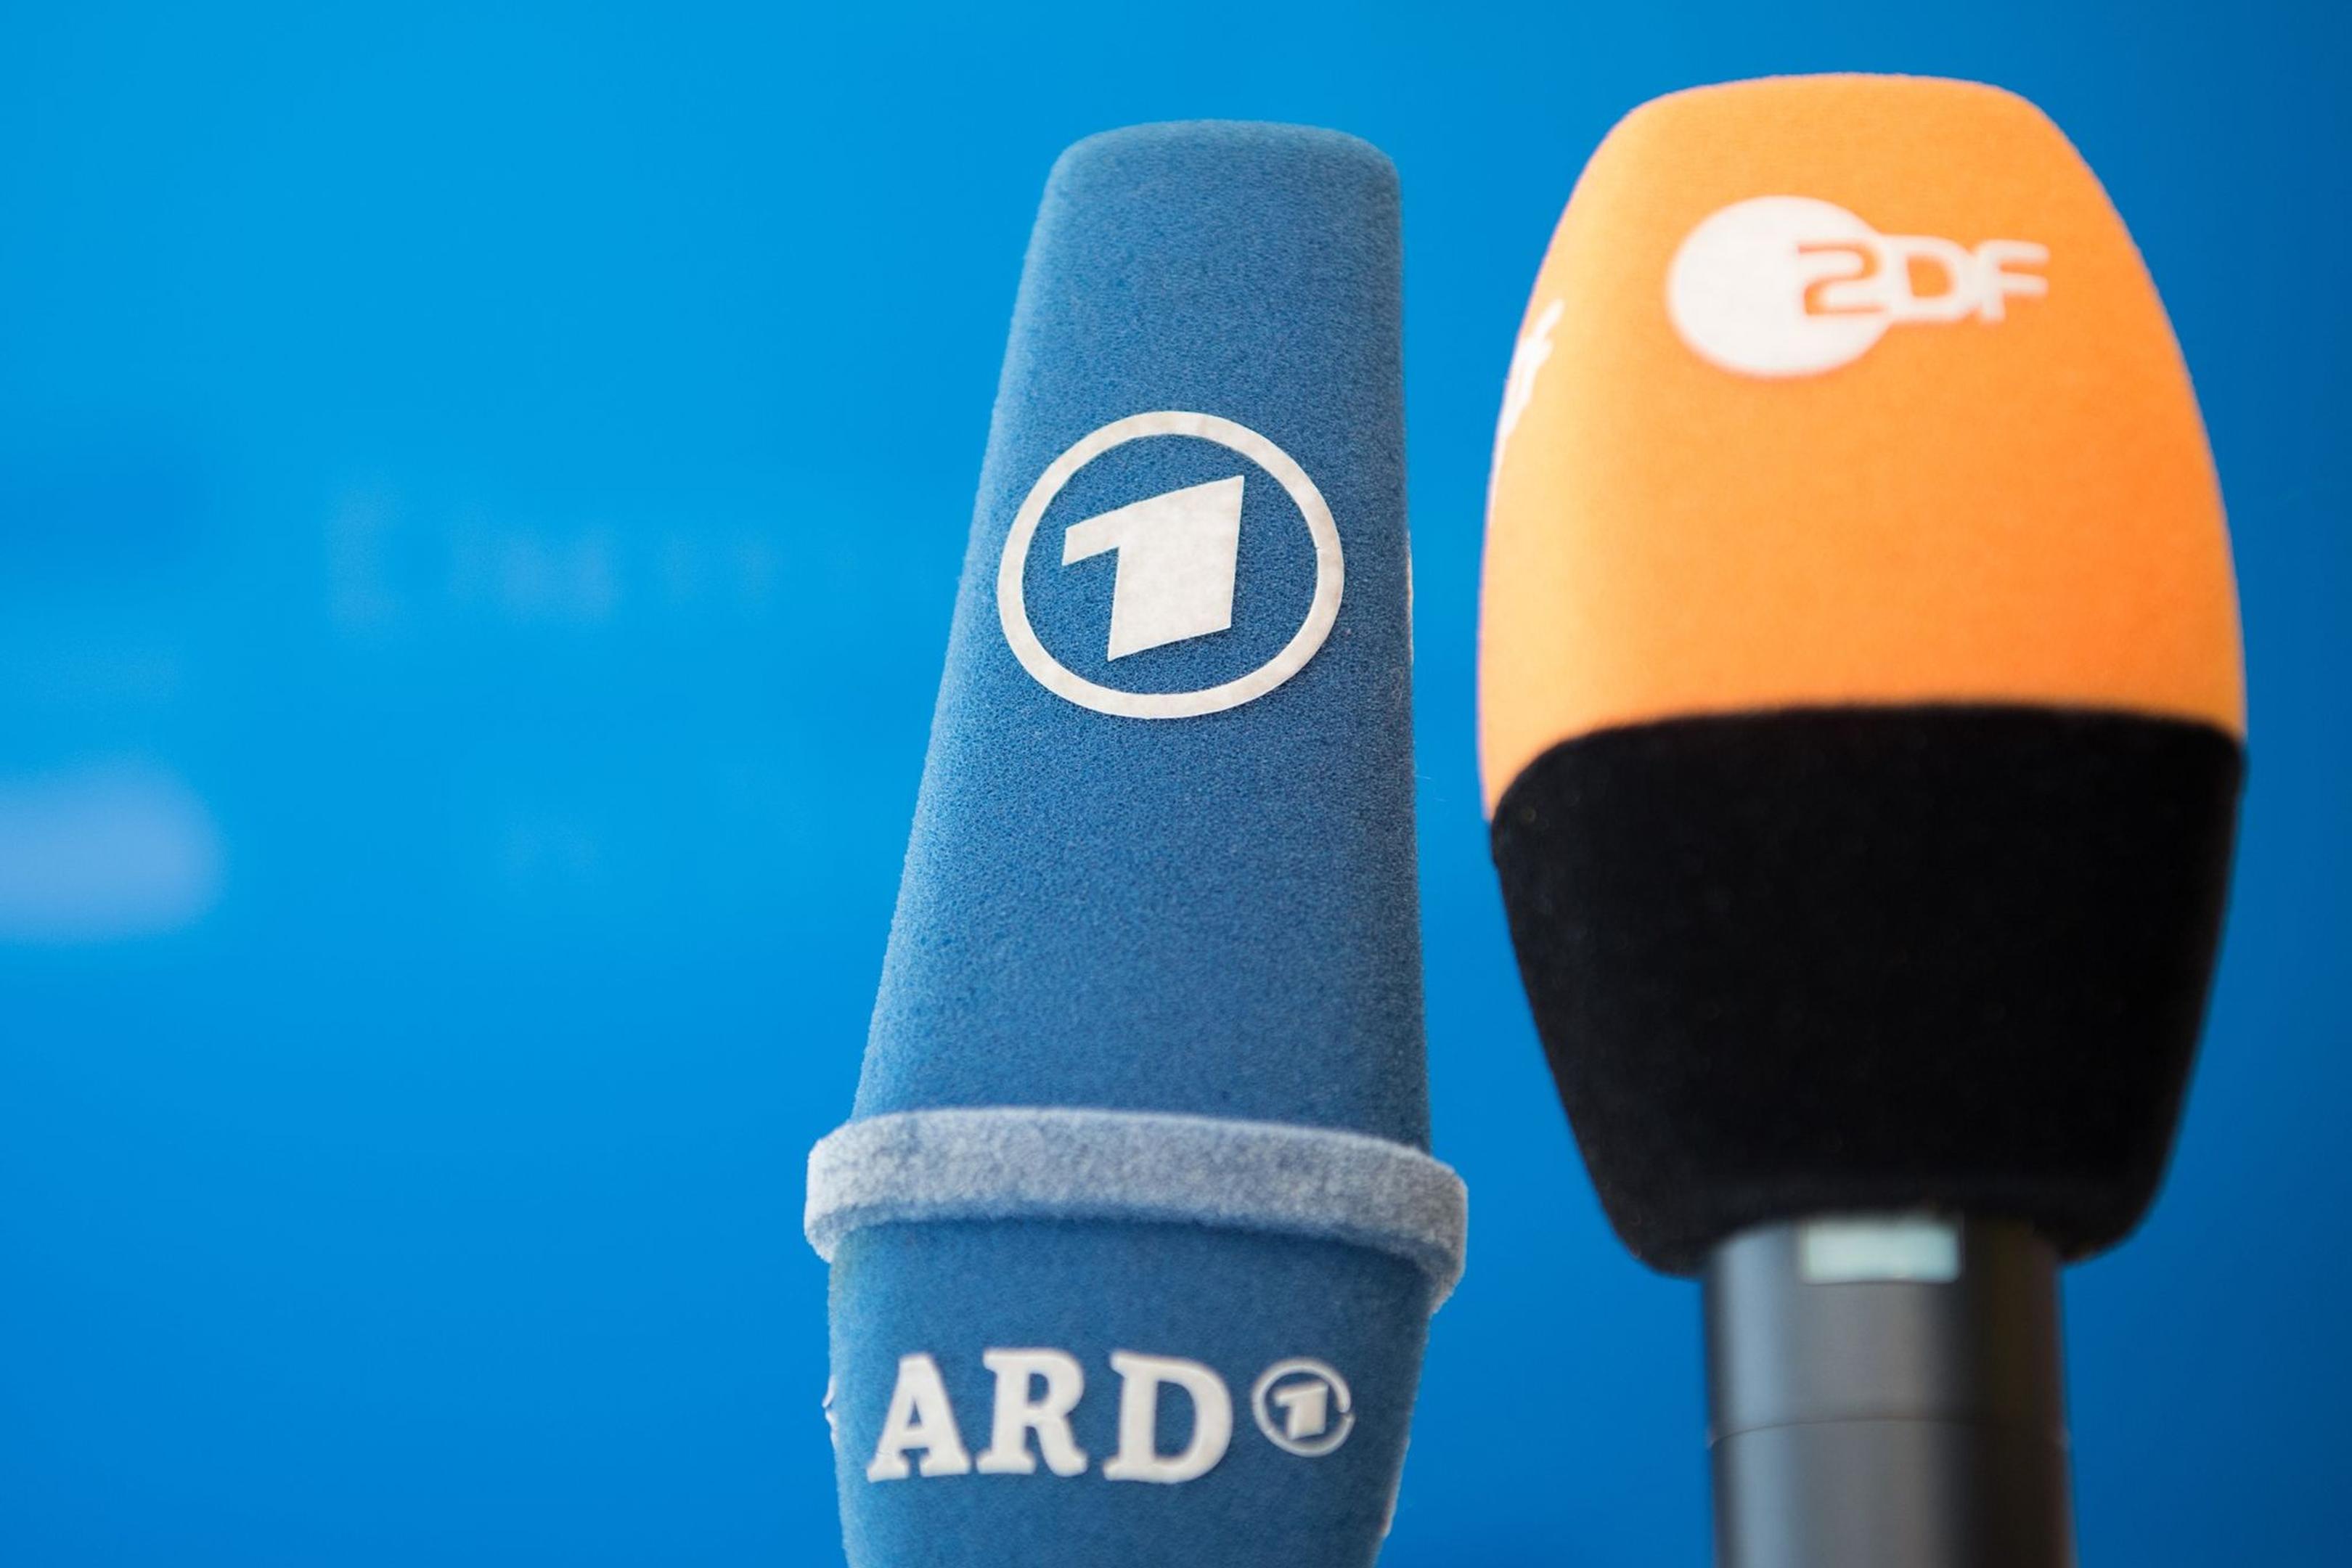 Die Fernsehsender ARD und ZDF setzen bei der Fußball-EM auf bekanntes Moderationspersonal.